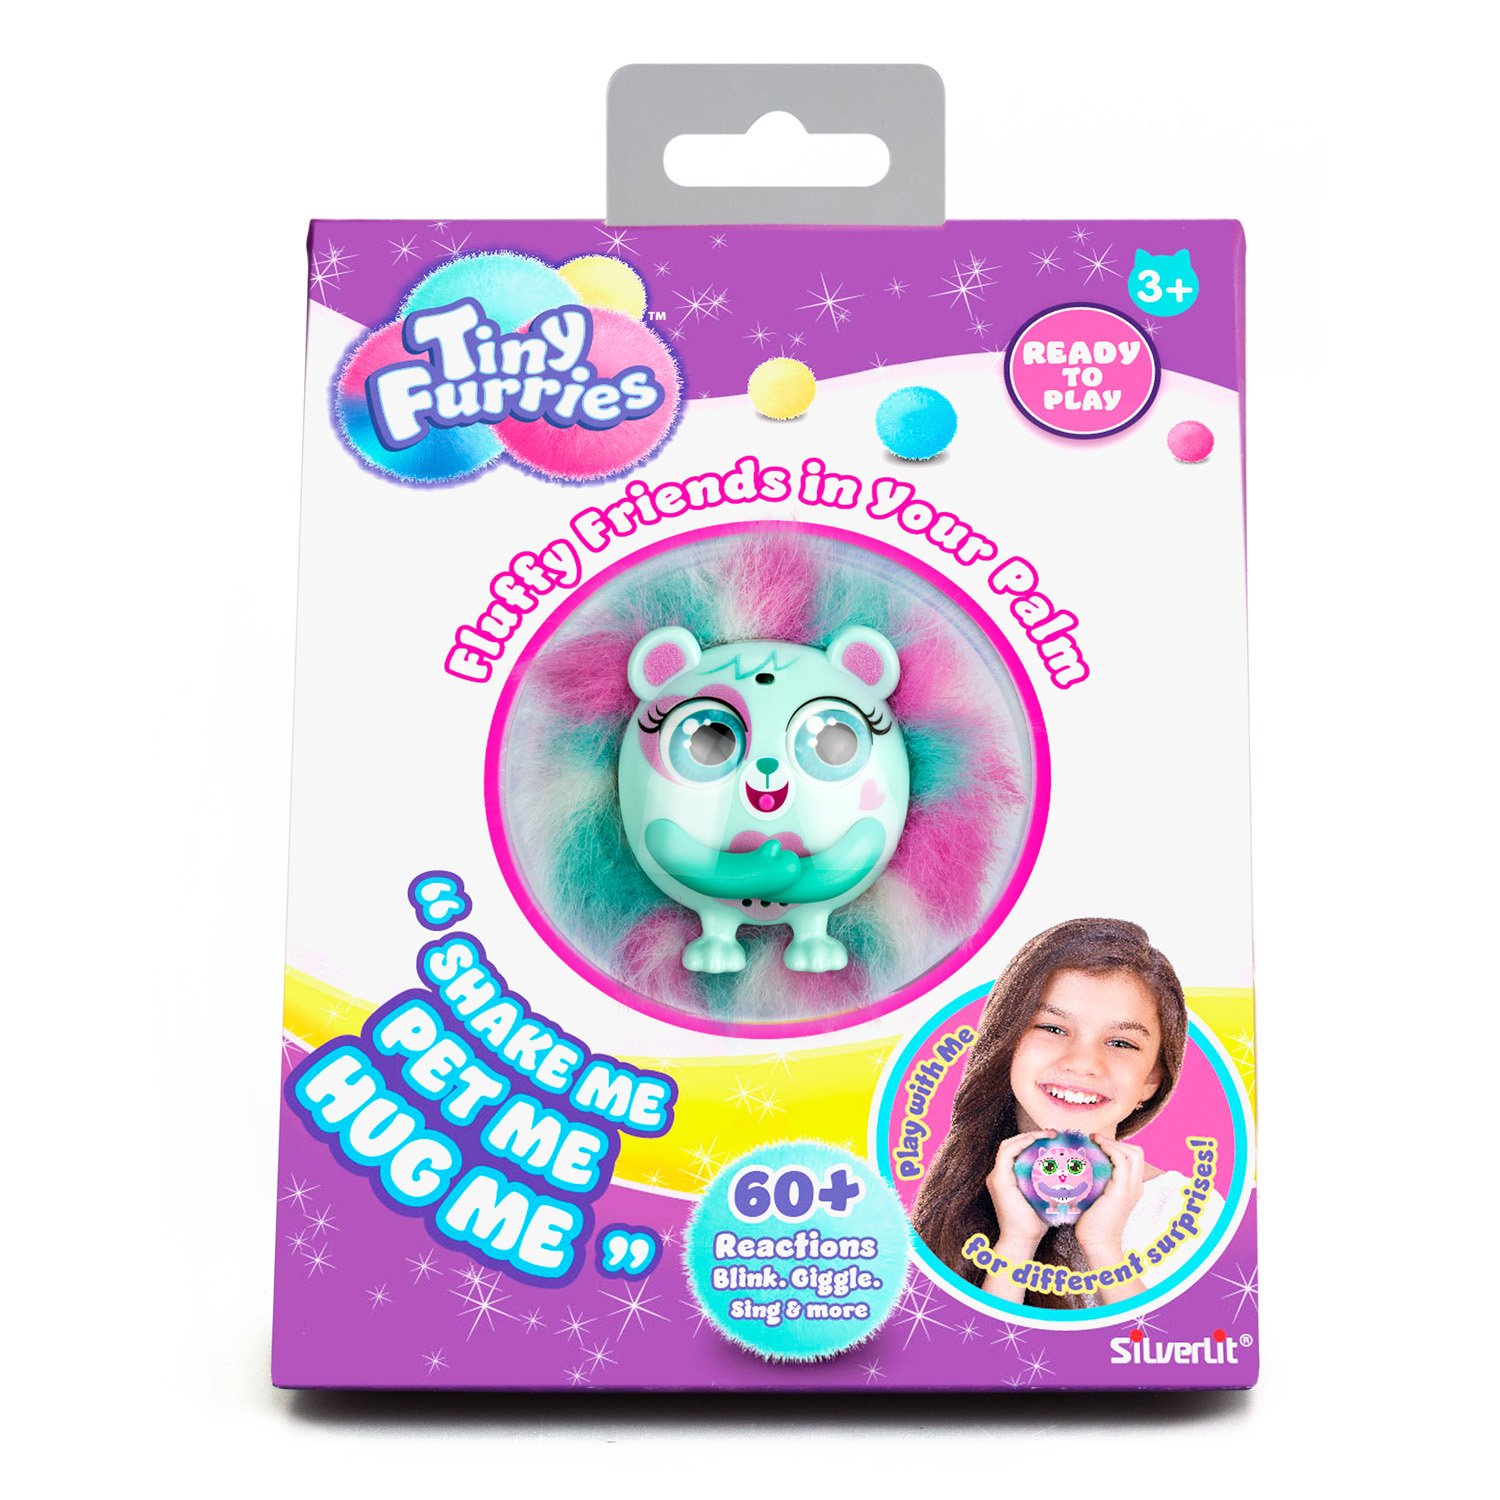 Интерактивная игрушка из серии Tiny Furry – Mint, мурлыкает, свистит, зевает  